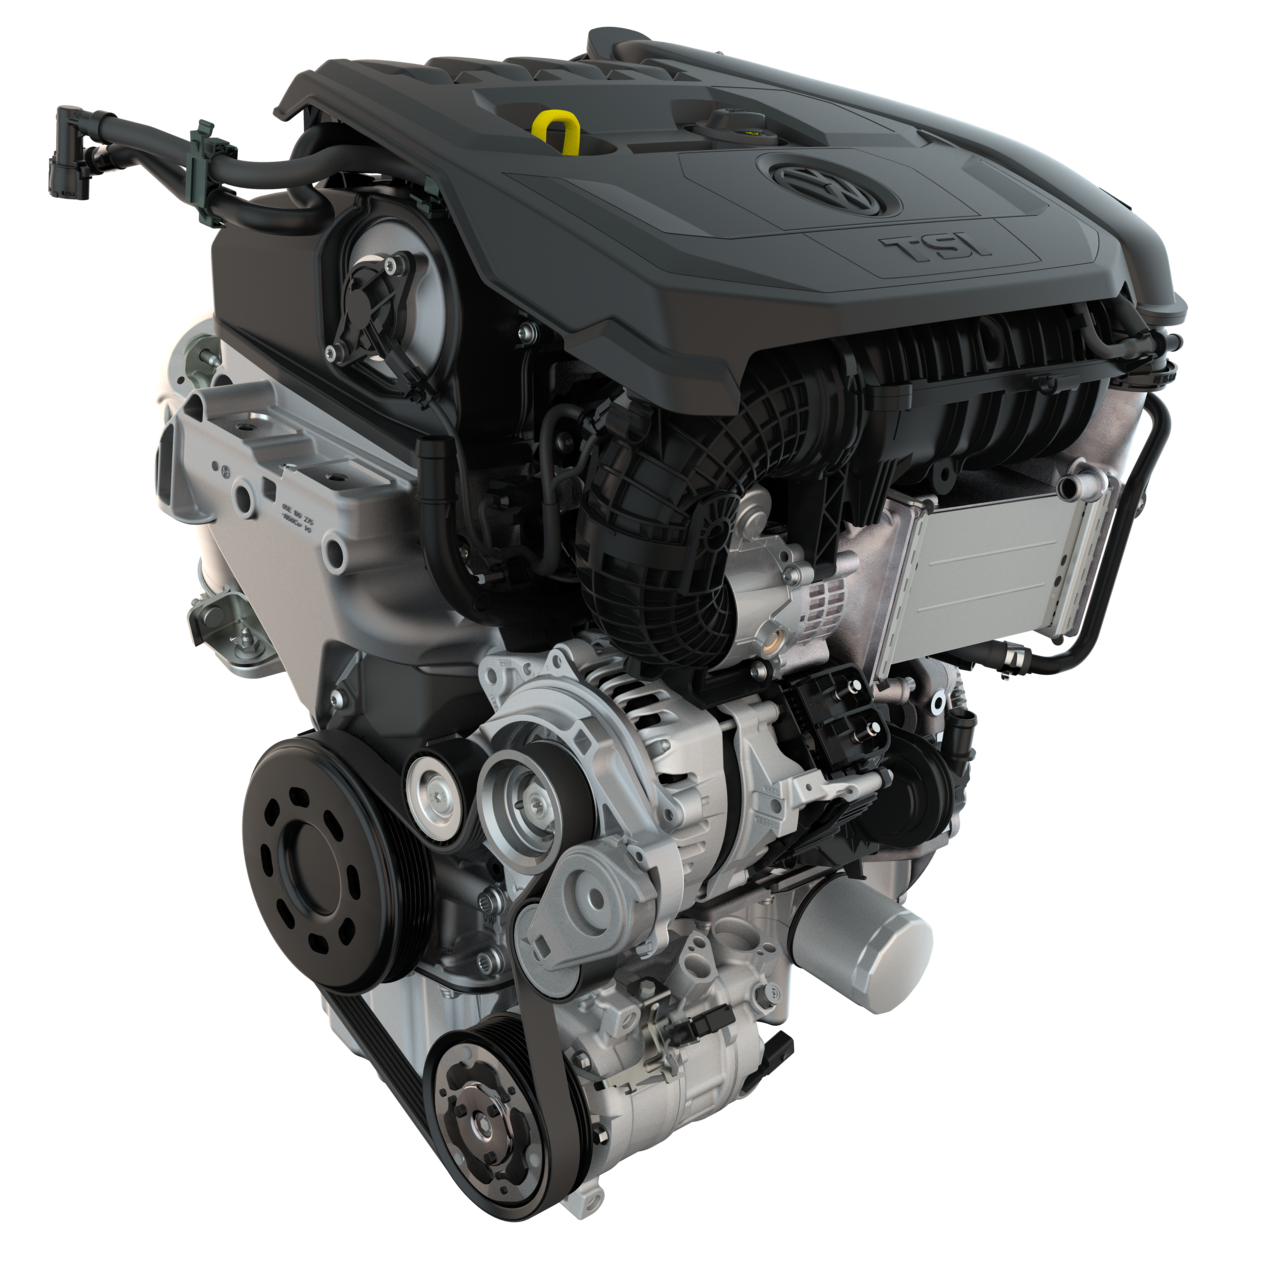 محرك EA211 هو المحرك الرئيسي لسيارات VAG الجديدة.